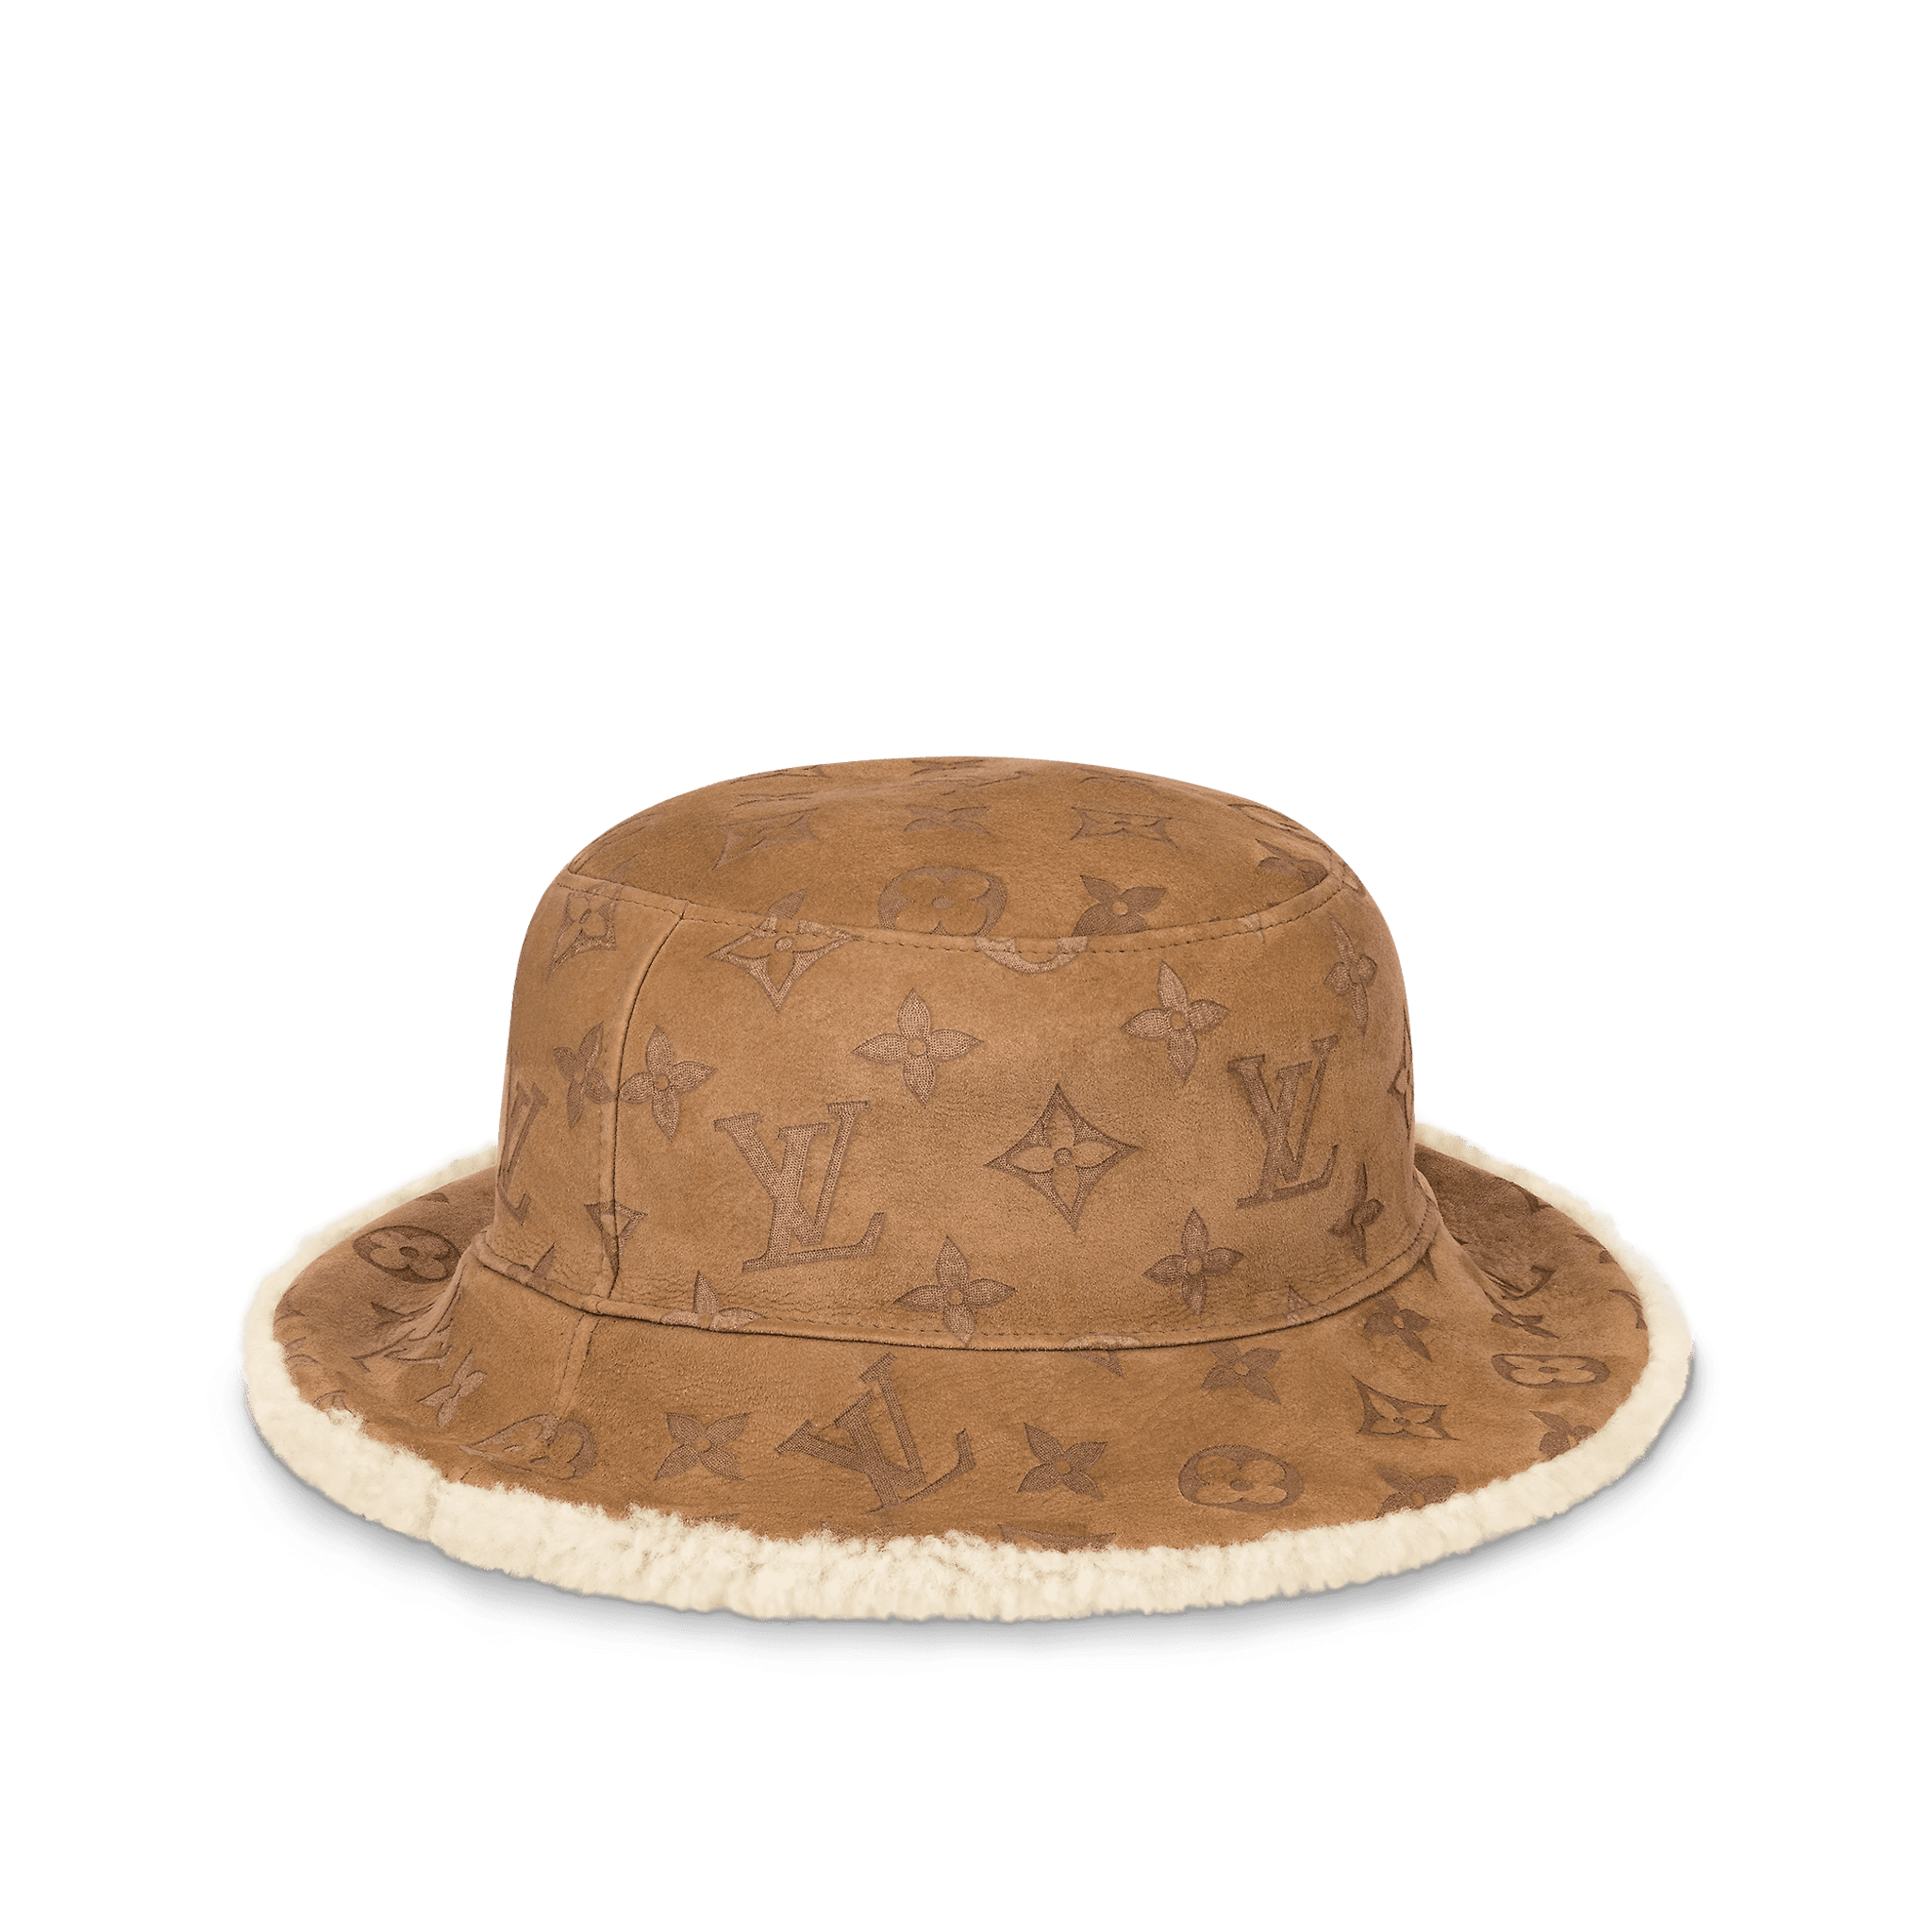 Lv inspired fur bucket hats